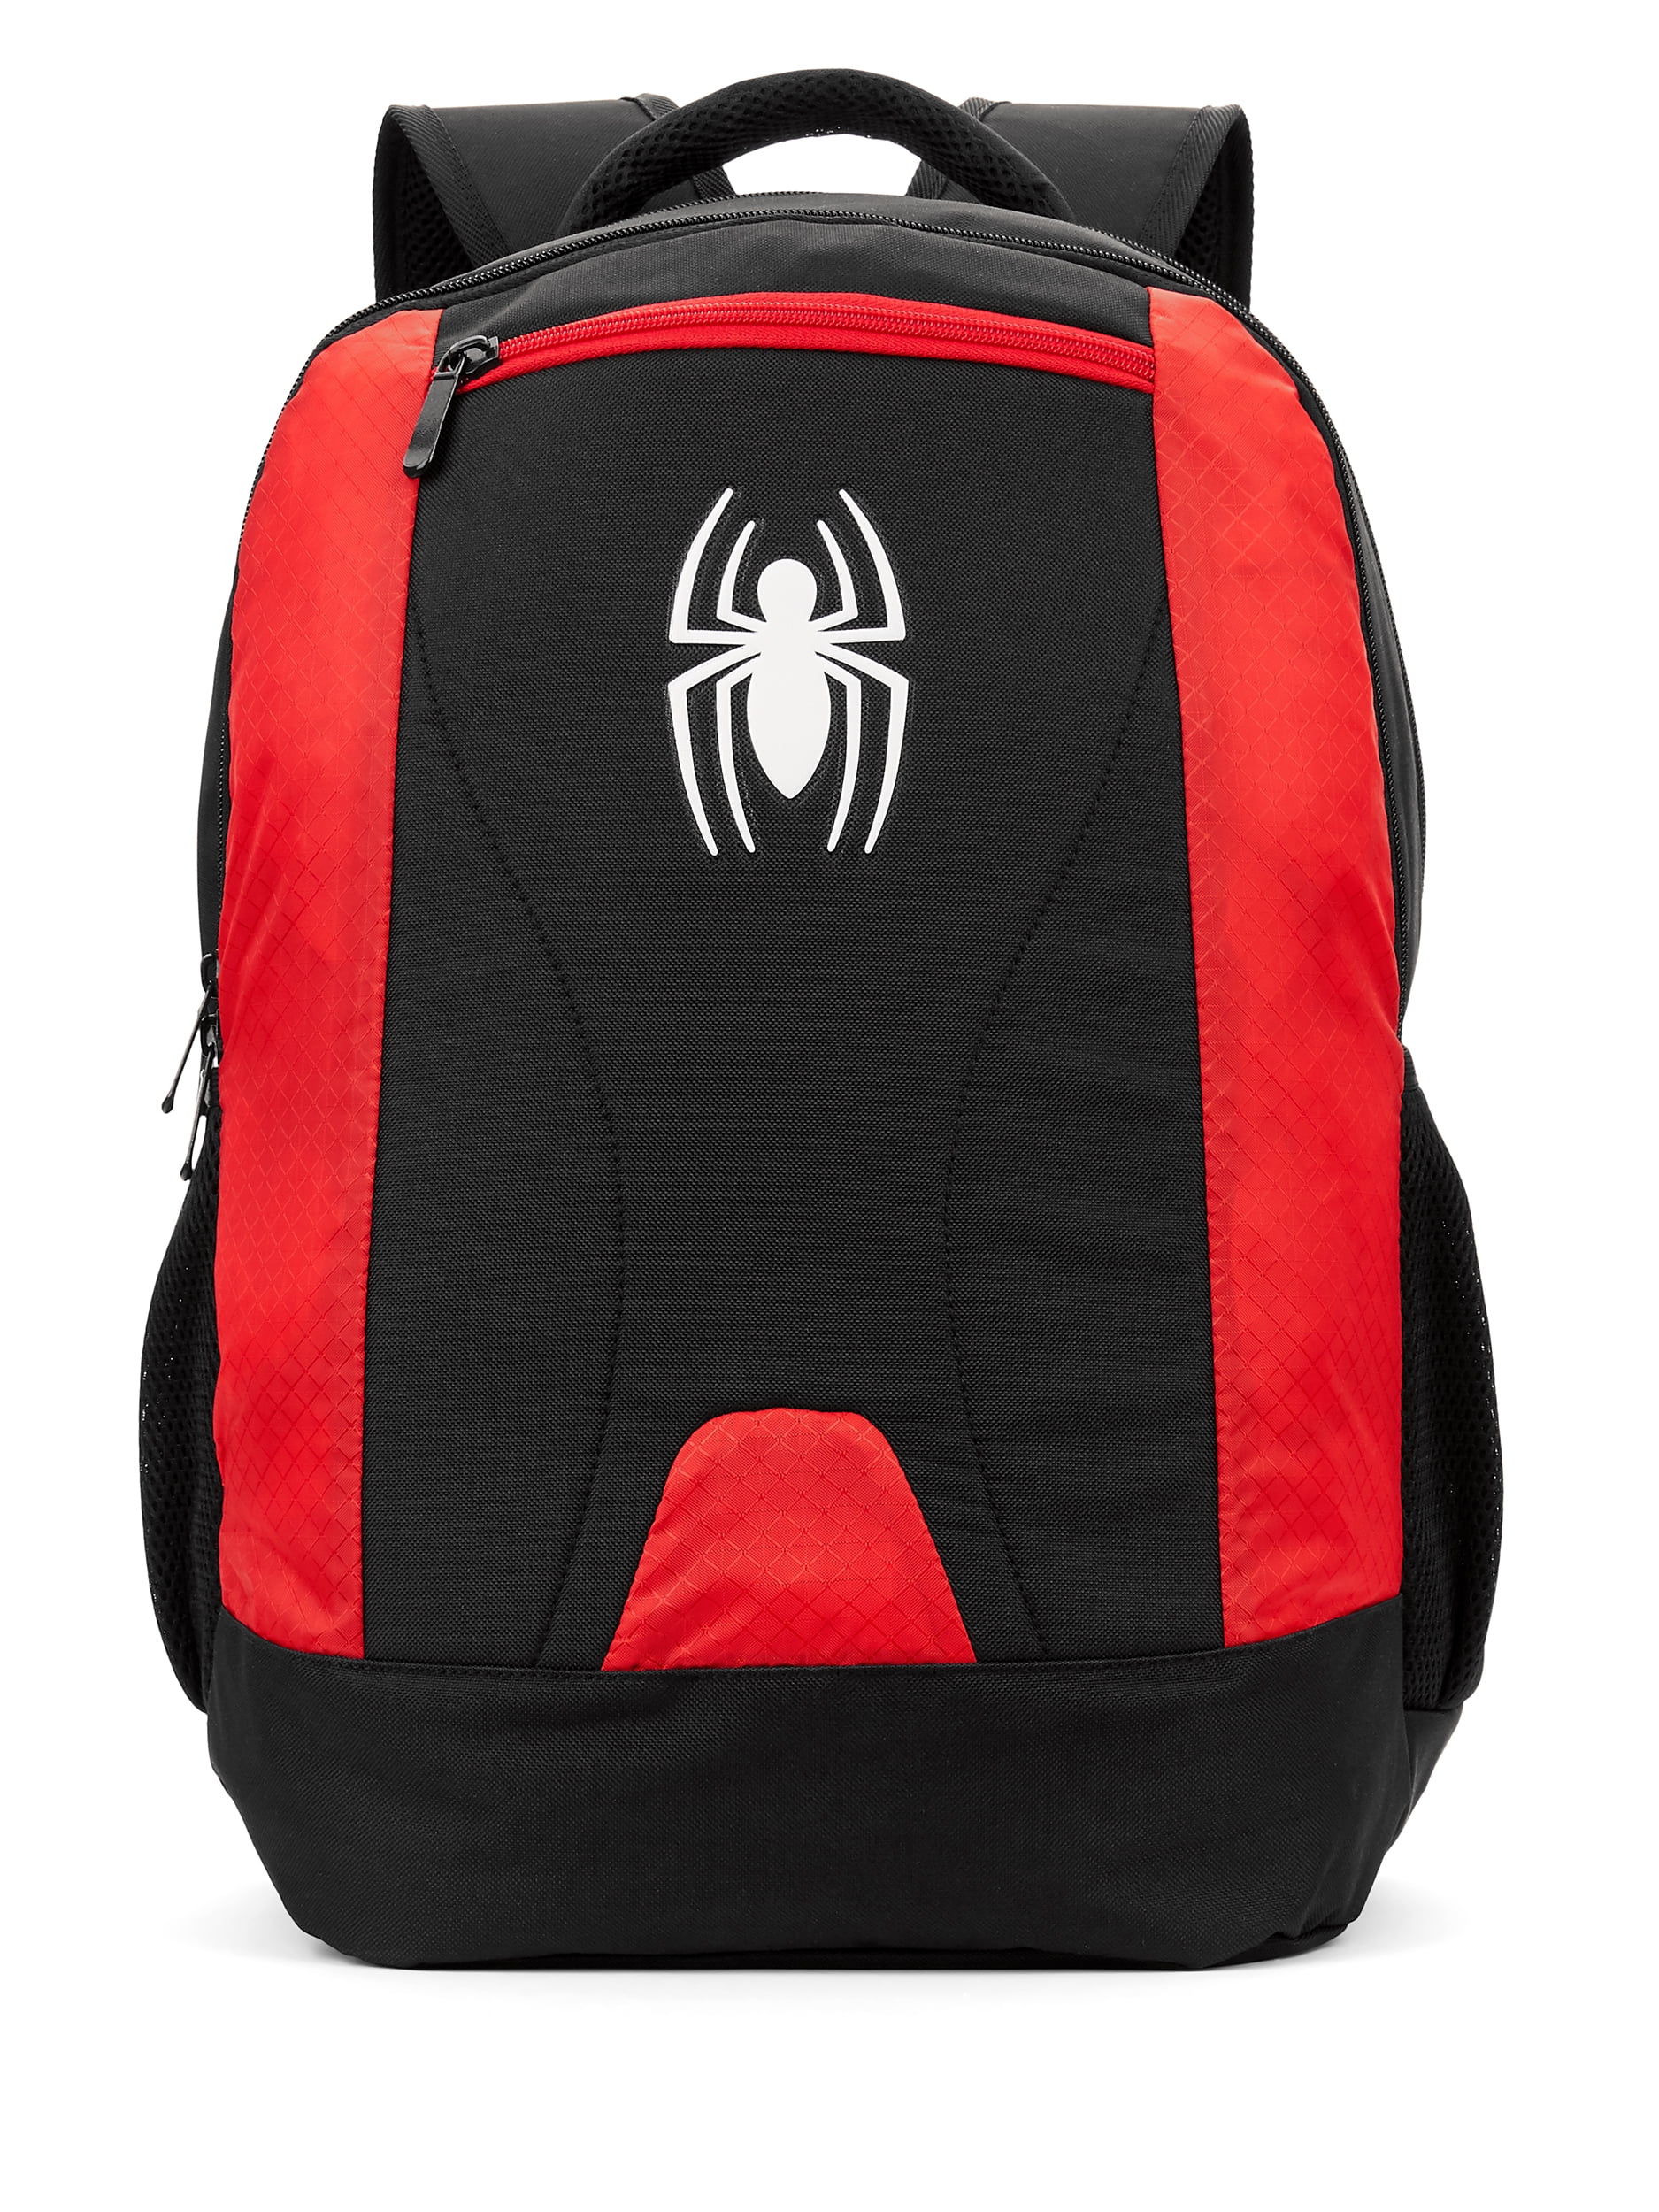 Marvel Spiderman Large Black/Red Messenger School & Book Bag for Kids Boys New 